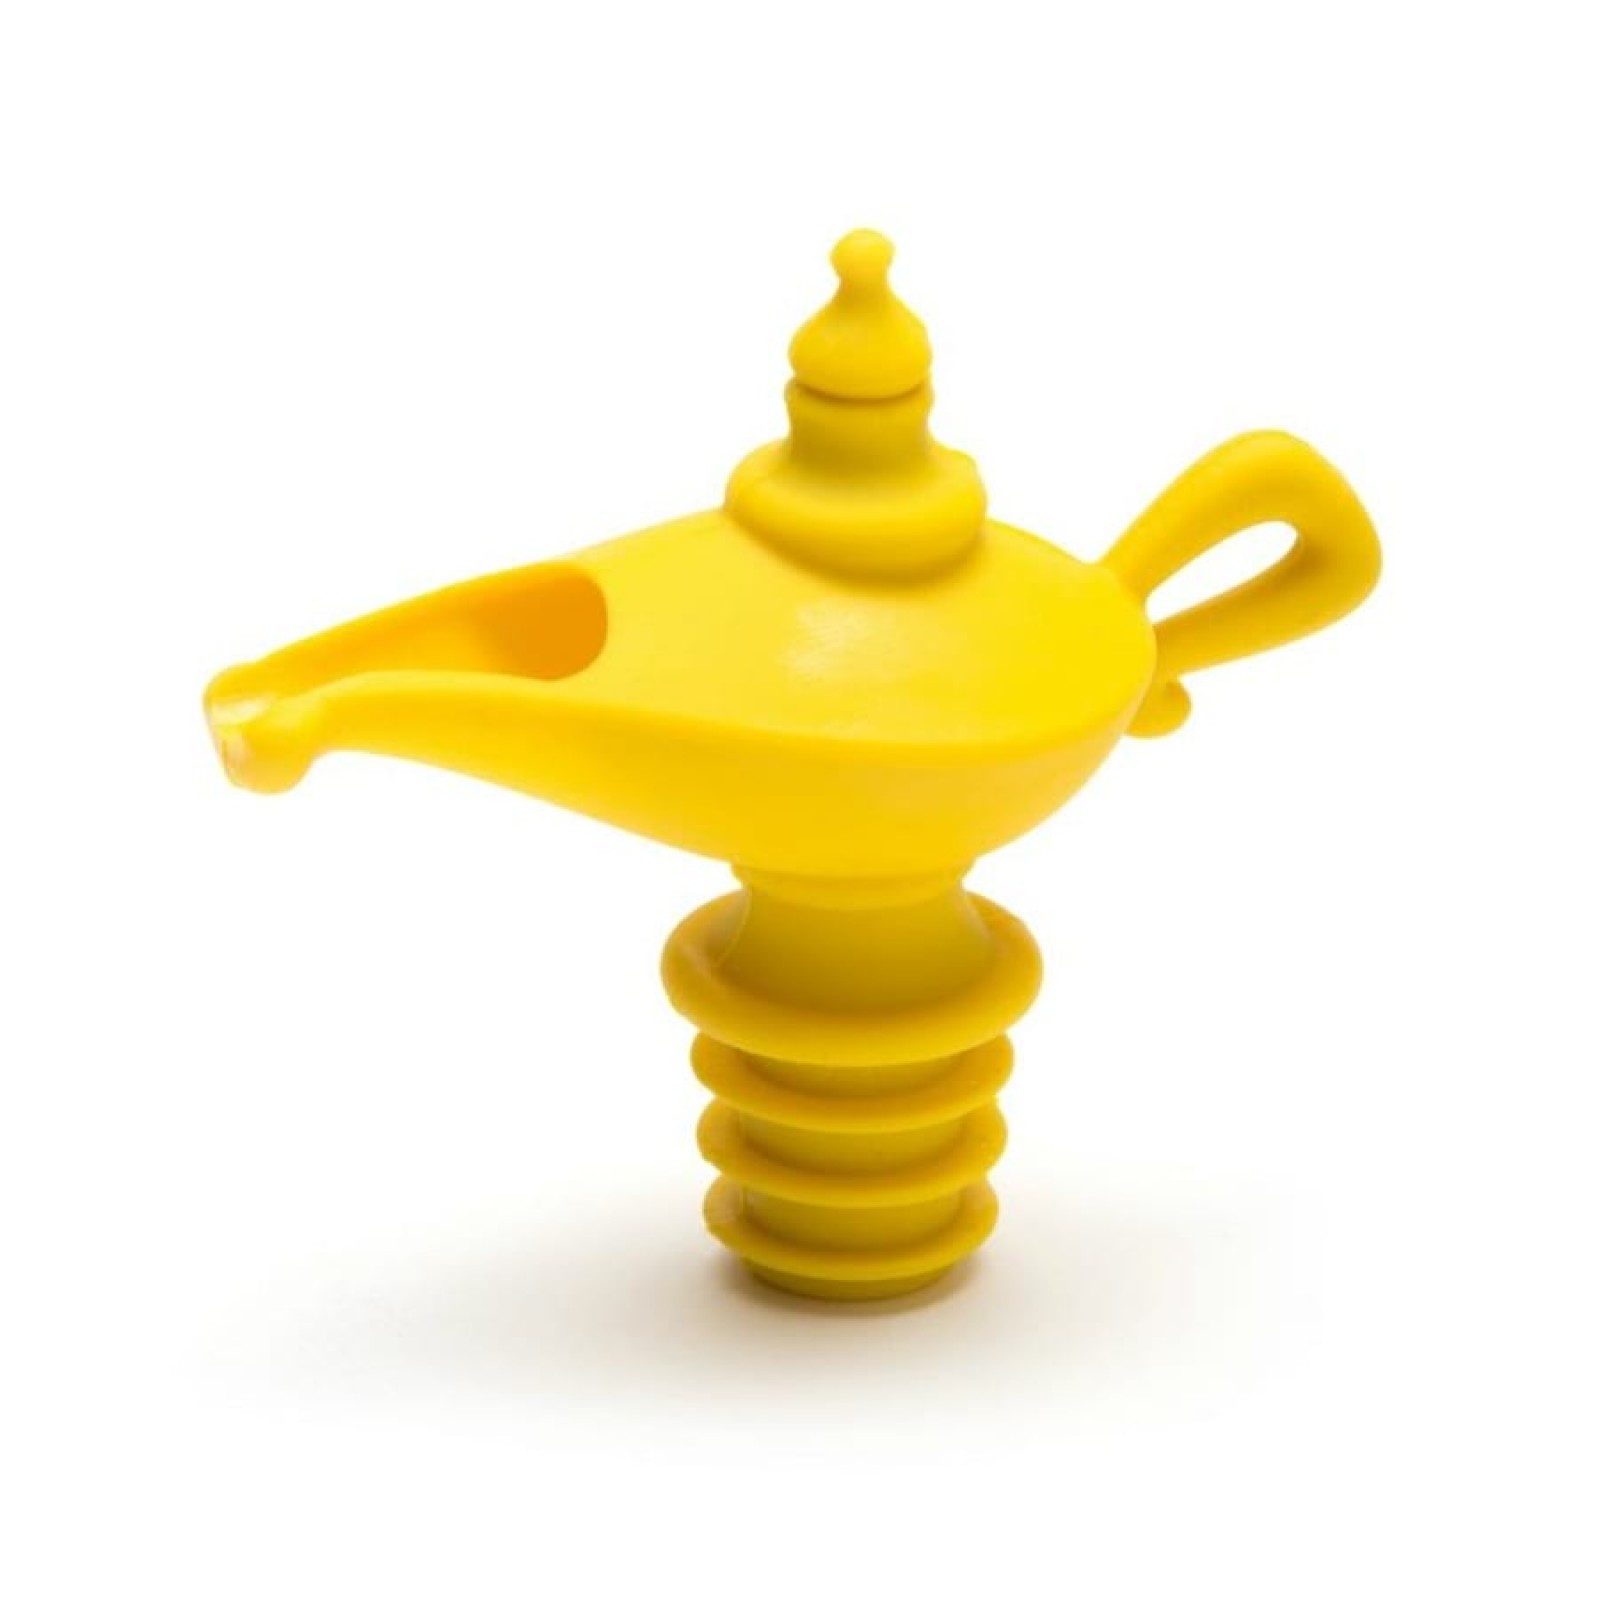 Oiladdin Pourer & Stopper (Yellow) - Peleg Design